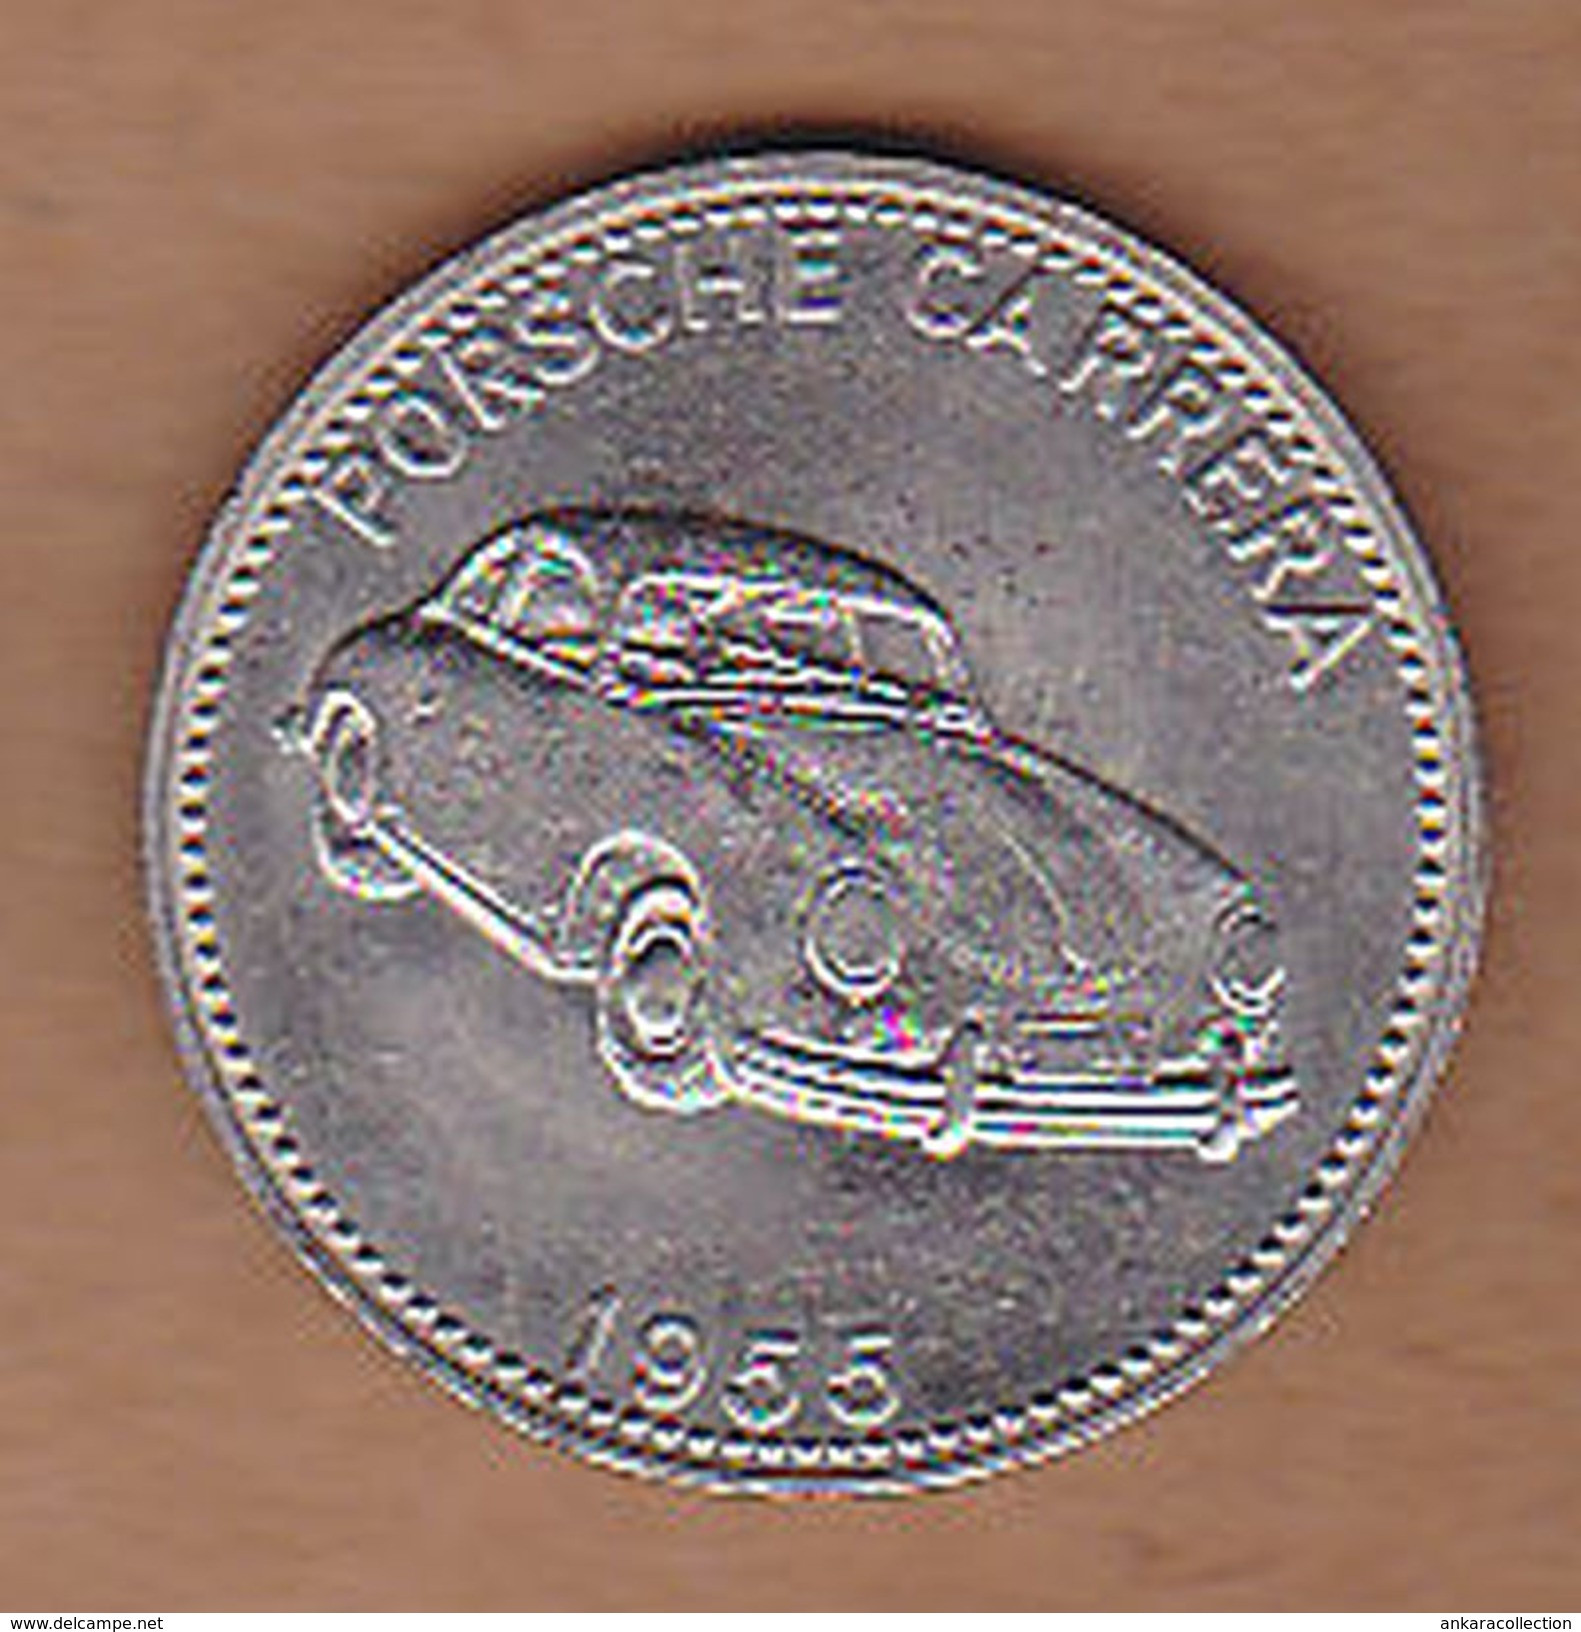 AC -  PORSCHE CARRERA 1955 SHELL WELTBERUHMTE SPORTWAGEN TOKEN - JETON - Monétaires / De Nécessité